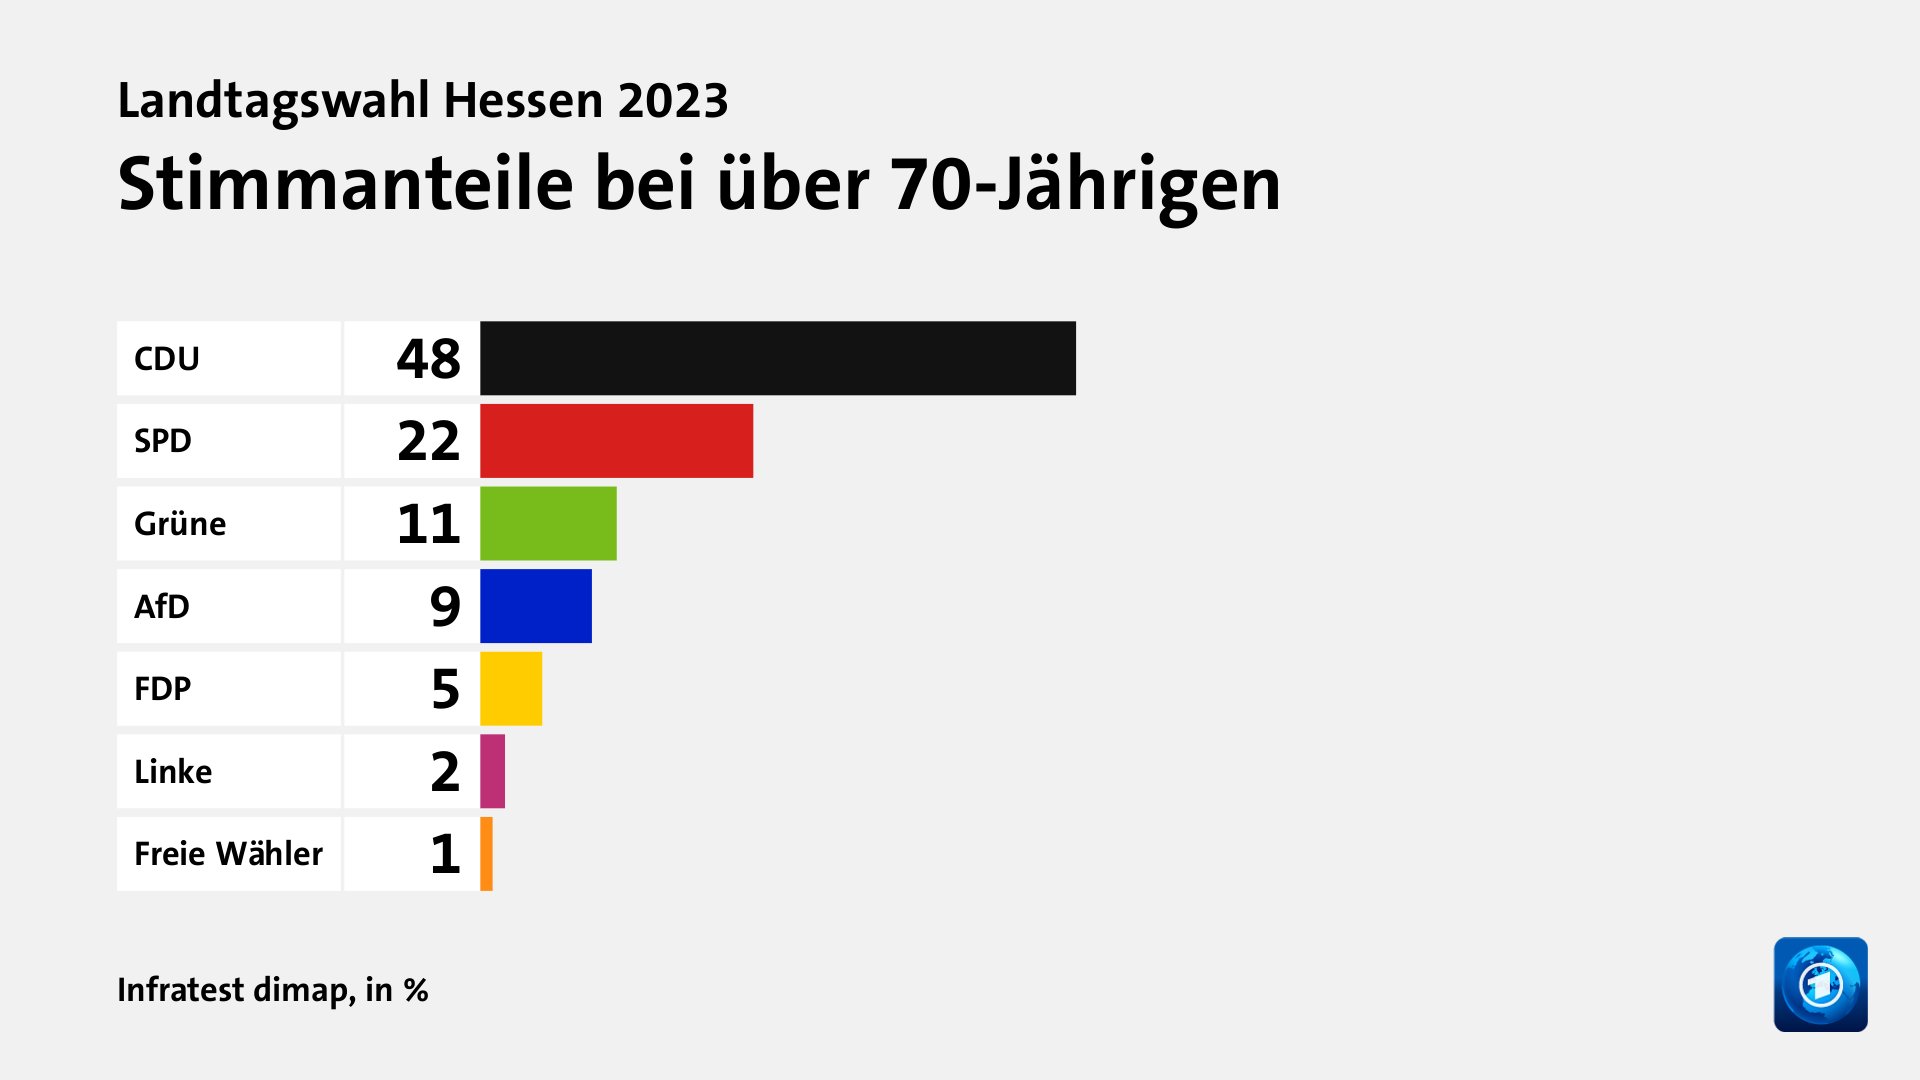 Stimmanteile bei über 70-Jährigen, in %: CDU 48, SPD 22, Grüne 11, AfD 9, FDP 5, Linke 2, Freie Wähler 1, Quelle: Infratest dimap